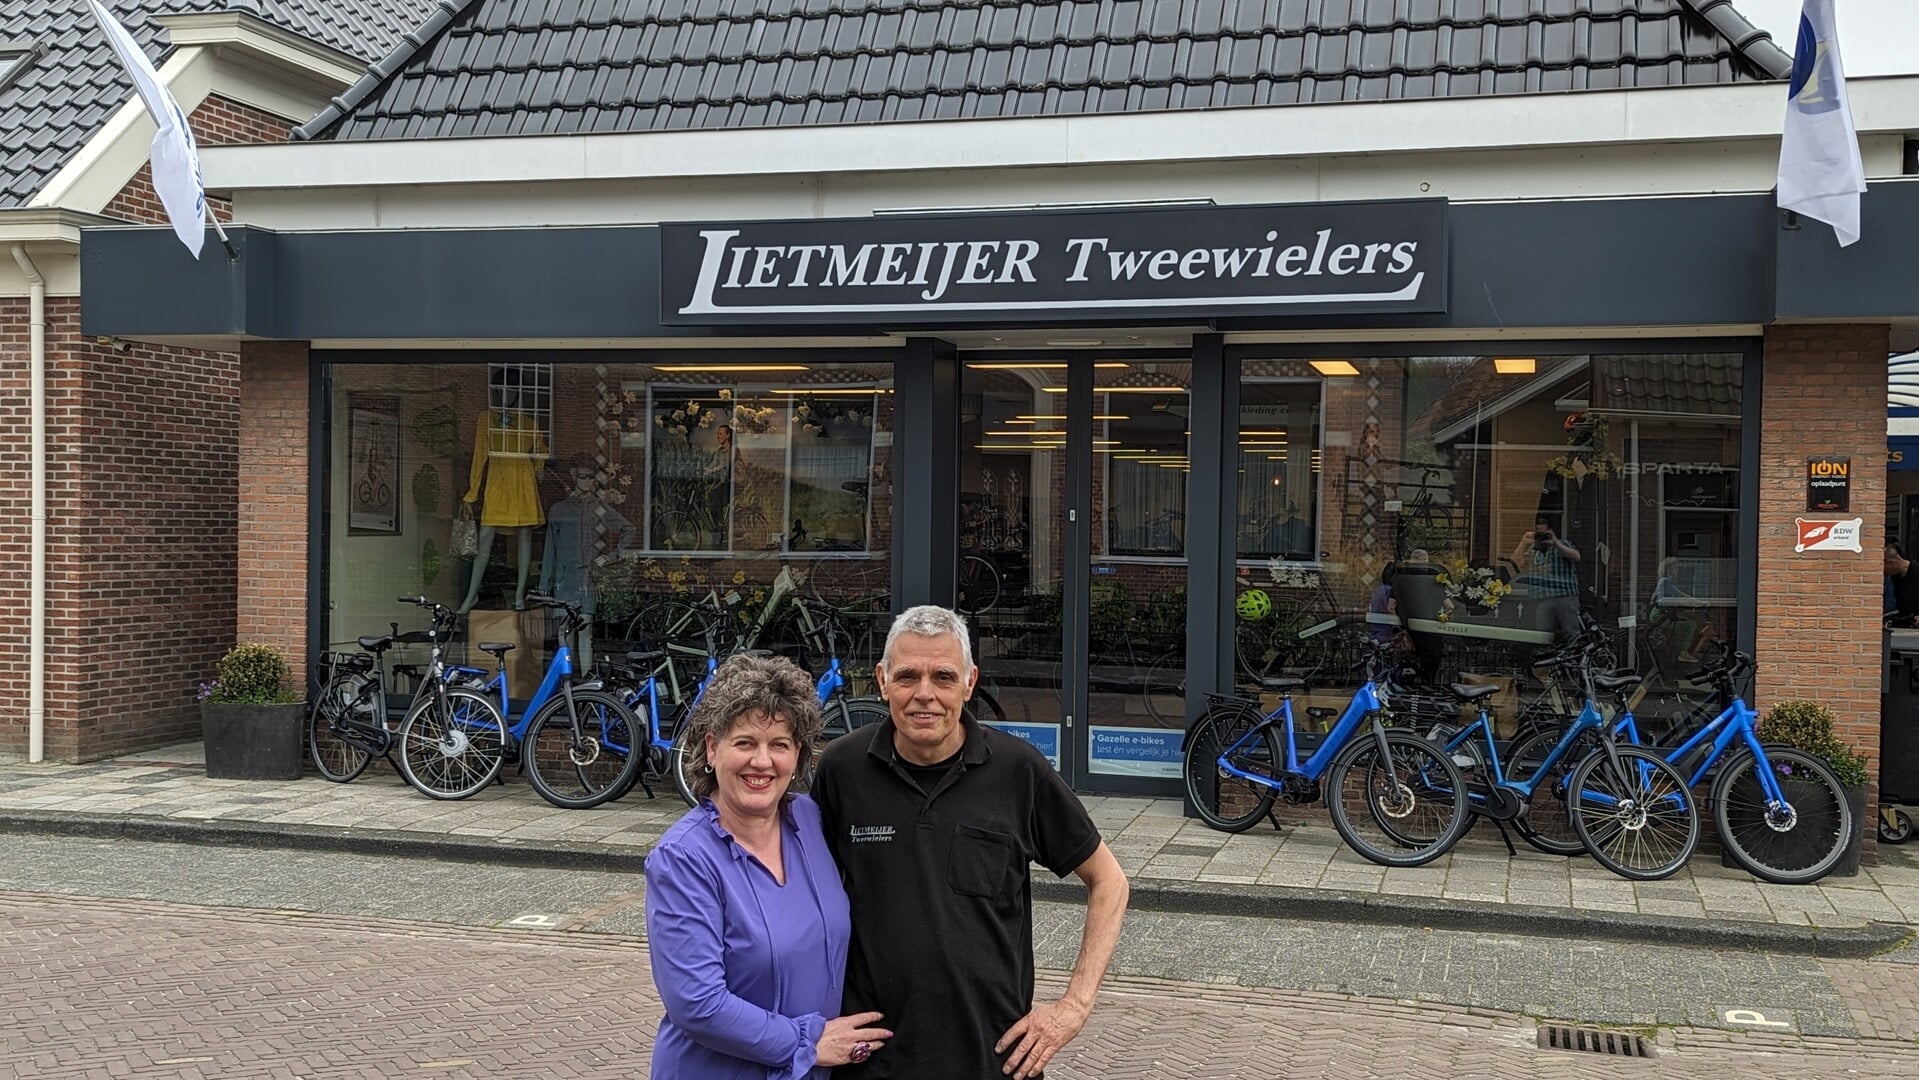  Anky en Jan Lietmeijer voor hun fietsenzaak aan de Schoolstraat in Uithuizen.  